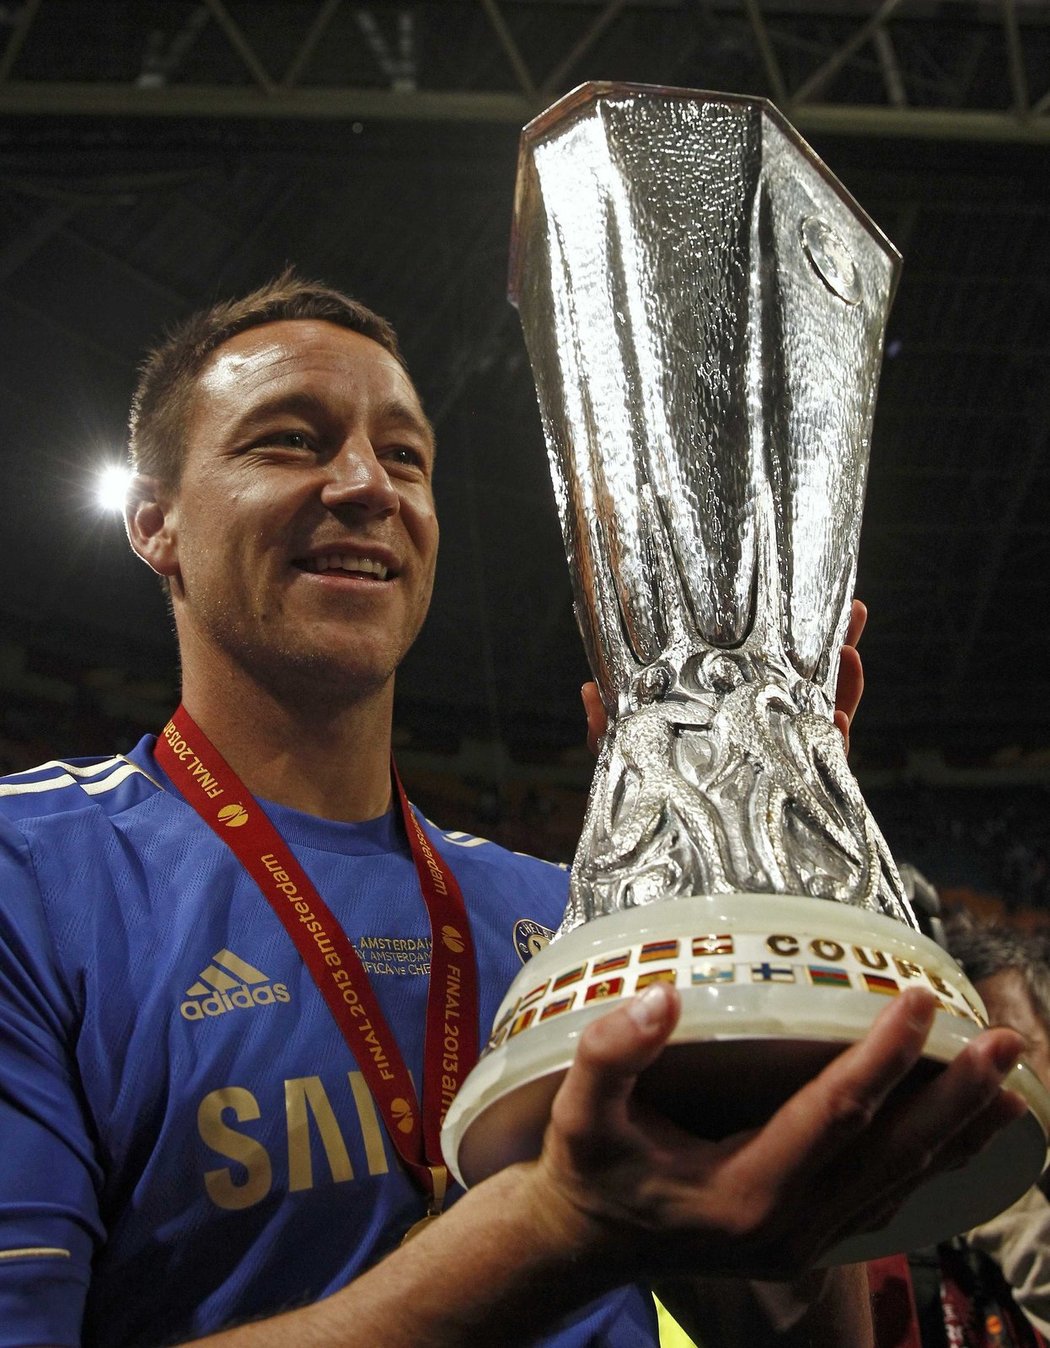 Obránce John Terry sice do finále Evropské ligy nezasáhl, po závěrečném hvizdu se ale na trávníku radoval se spoluhráči z trofeje. Chelsea vyhrála ve finále Evropské ligy nad Benfikou 2:1